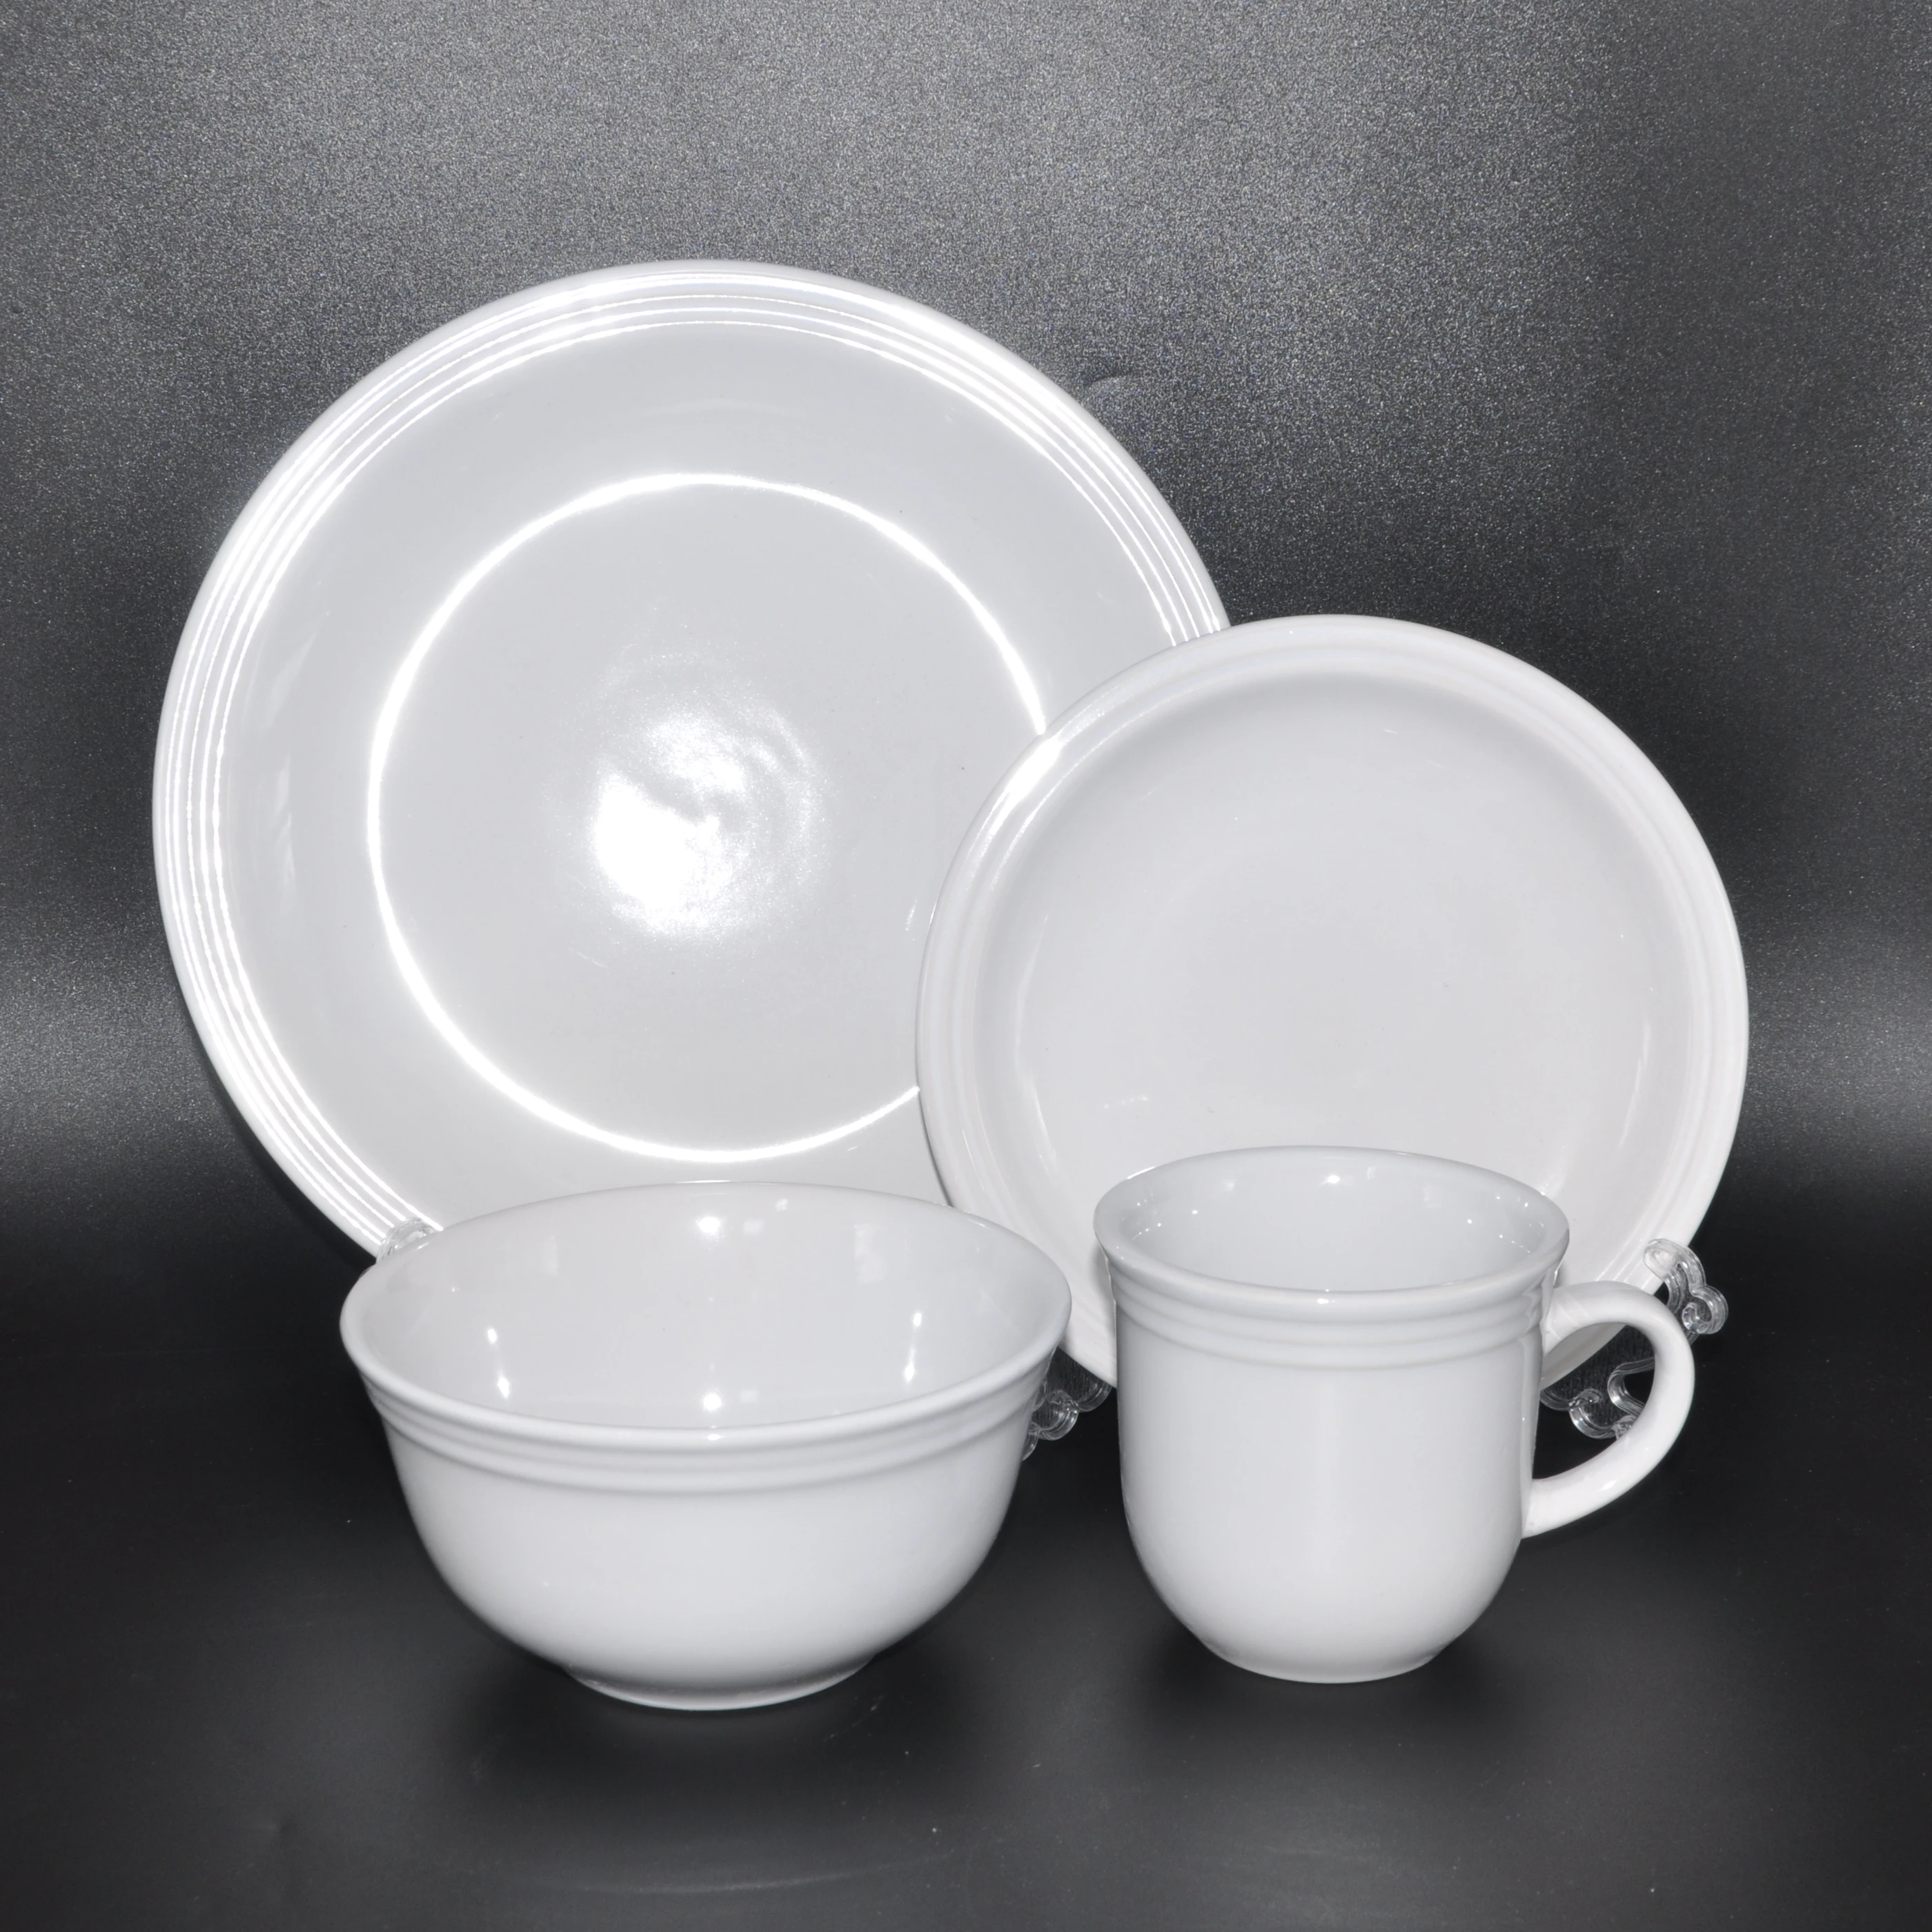 Factory Price Wedding Dinnerware Sets Porcelain Dinner Sets Tableware Pet Tableware